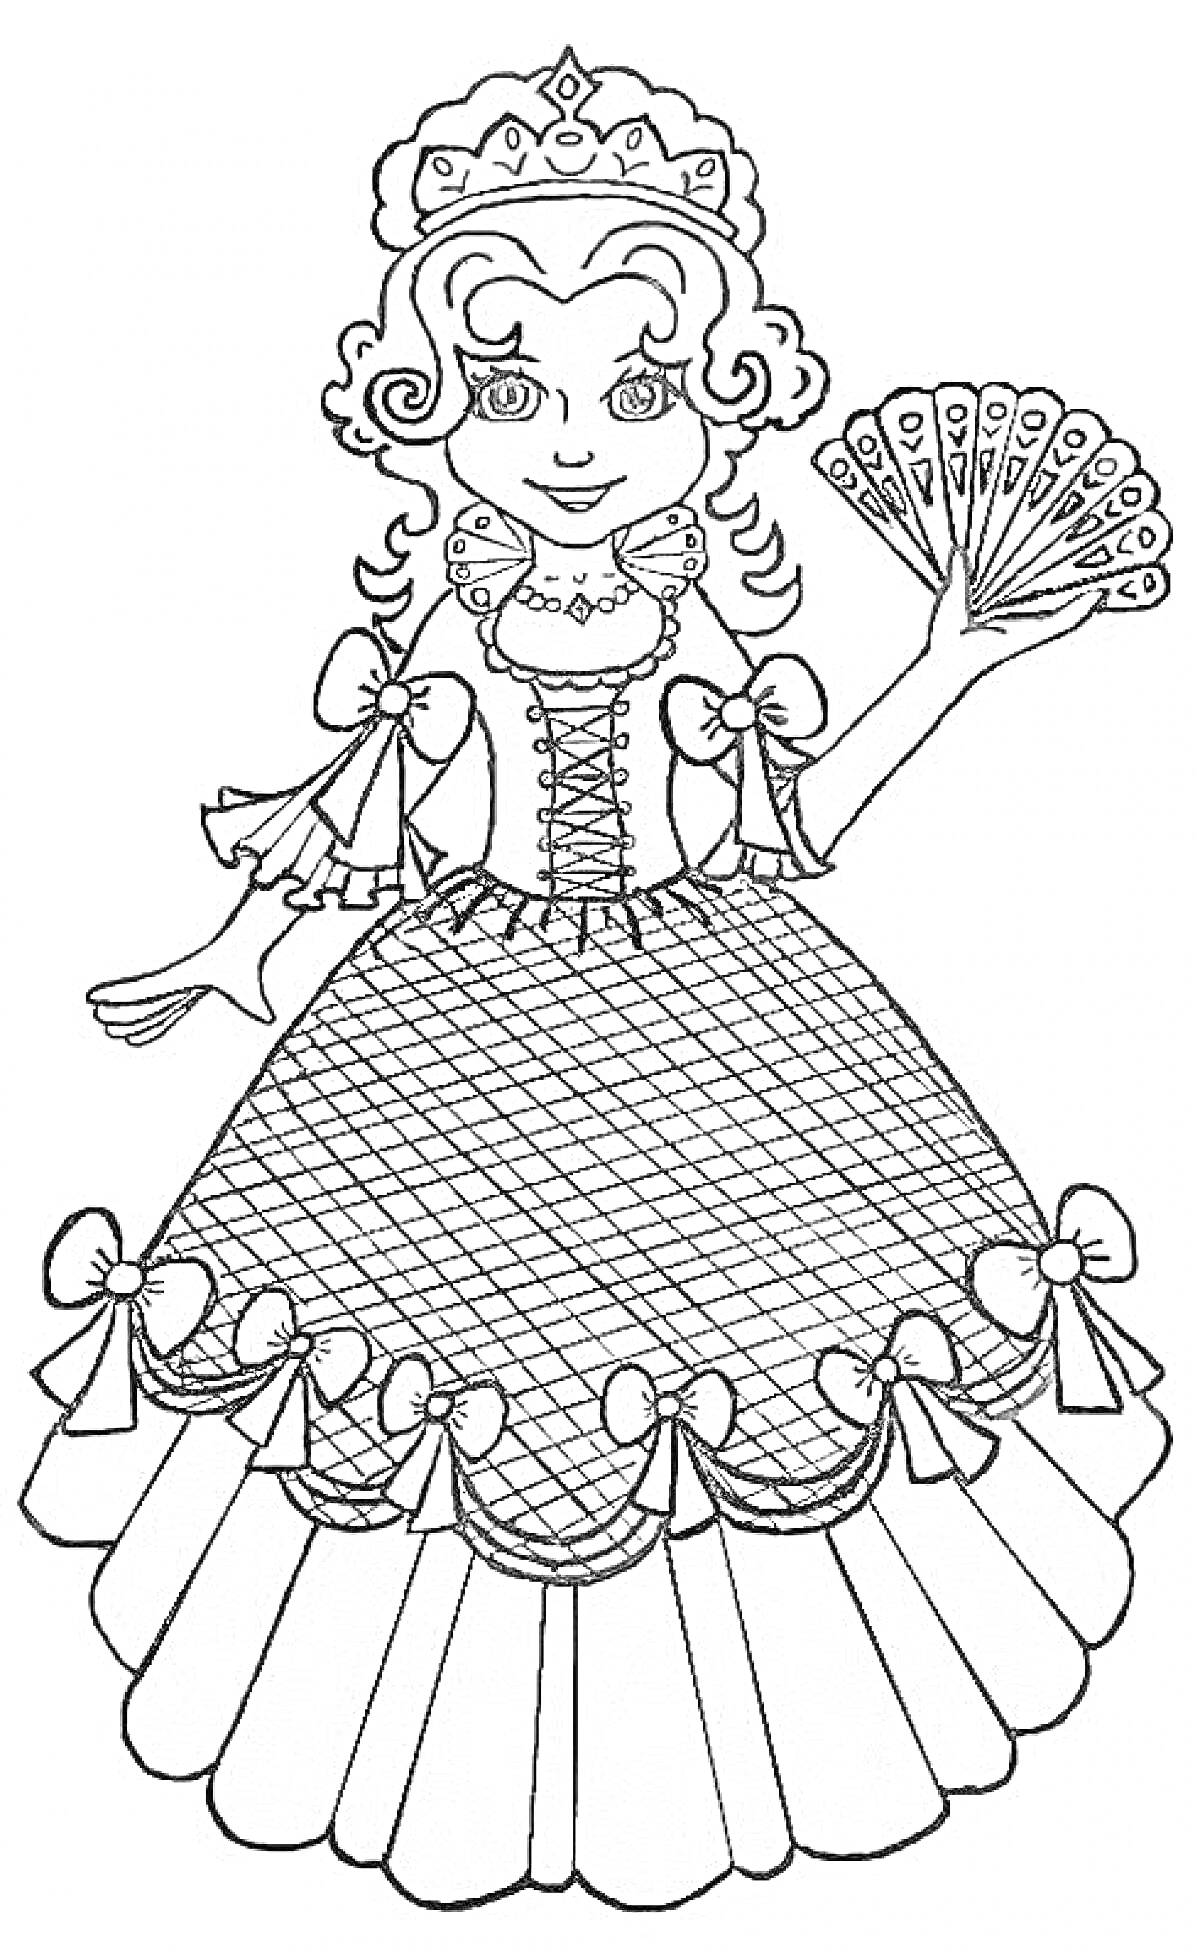 Раскраска Принцесса в новогоднем костюме с веером и бантиками